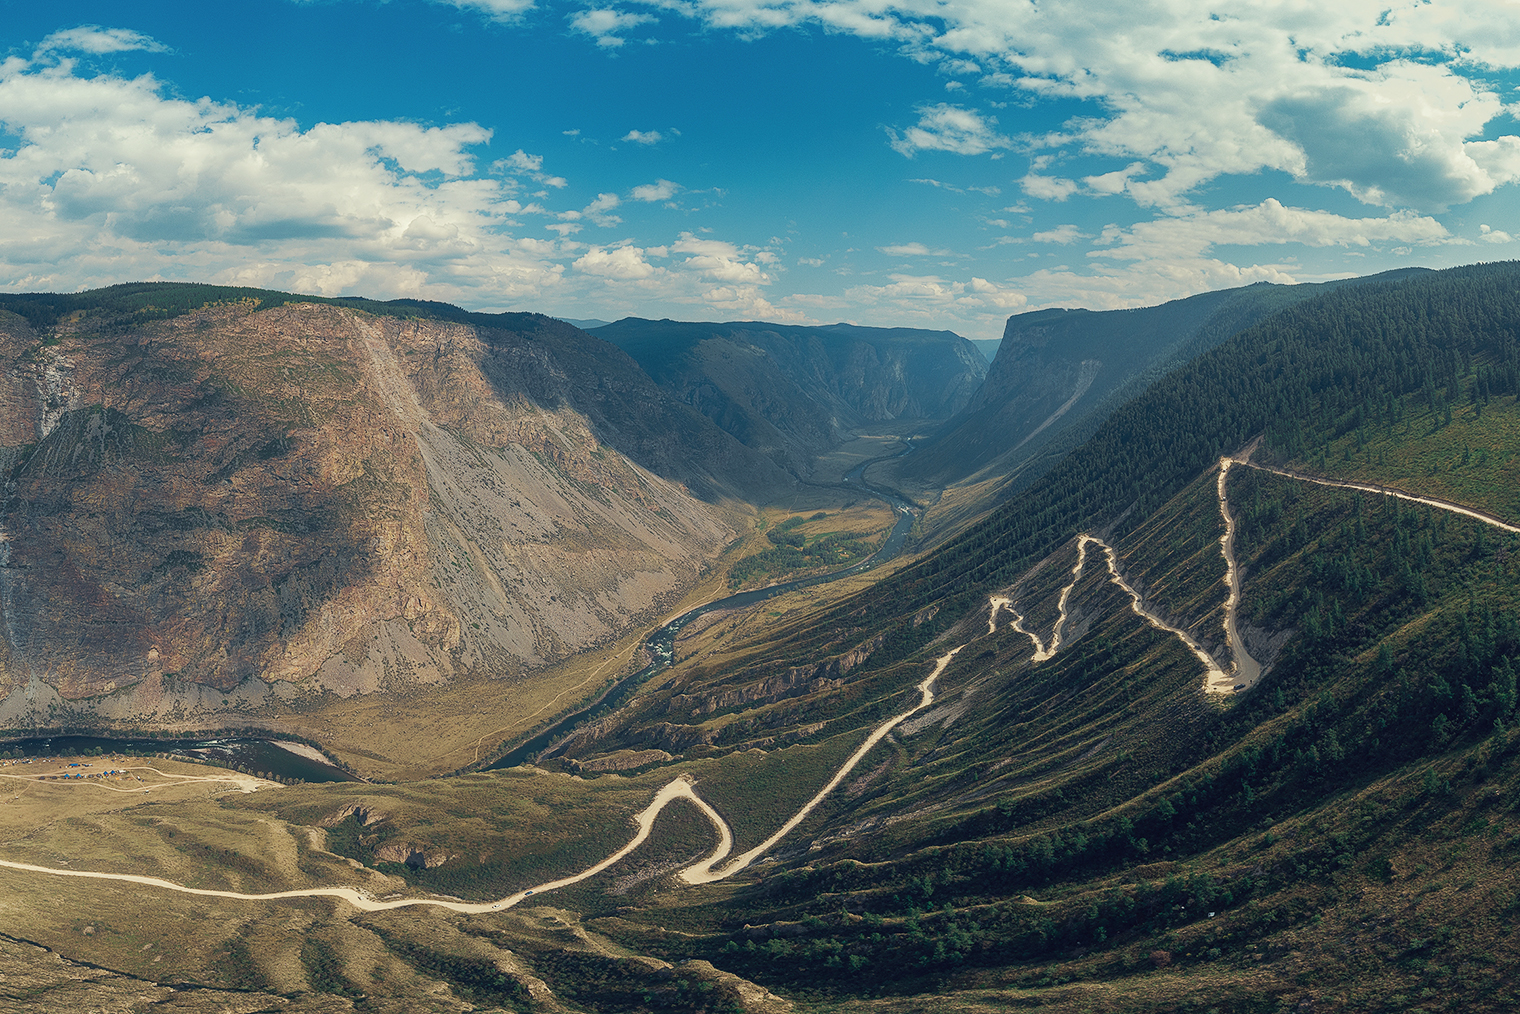 Знаменитый перевал Кату⁠-⁠Ярык в Чулышманской долине. Перепад высот — 900 метров, длина спуска — 3700 метров, серпантин имеет девять поворотов. Технически сложный перевал. Спускаться стоит только на авто с полным приводом, если не жалко машину, потому что подняться назад будет очень сложно